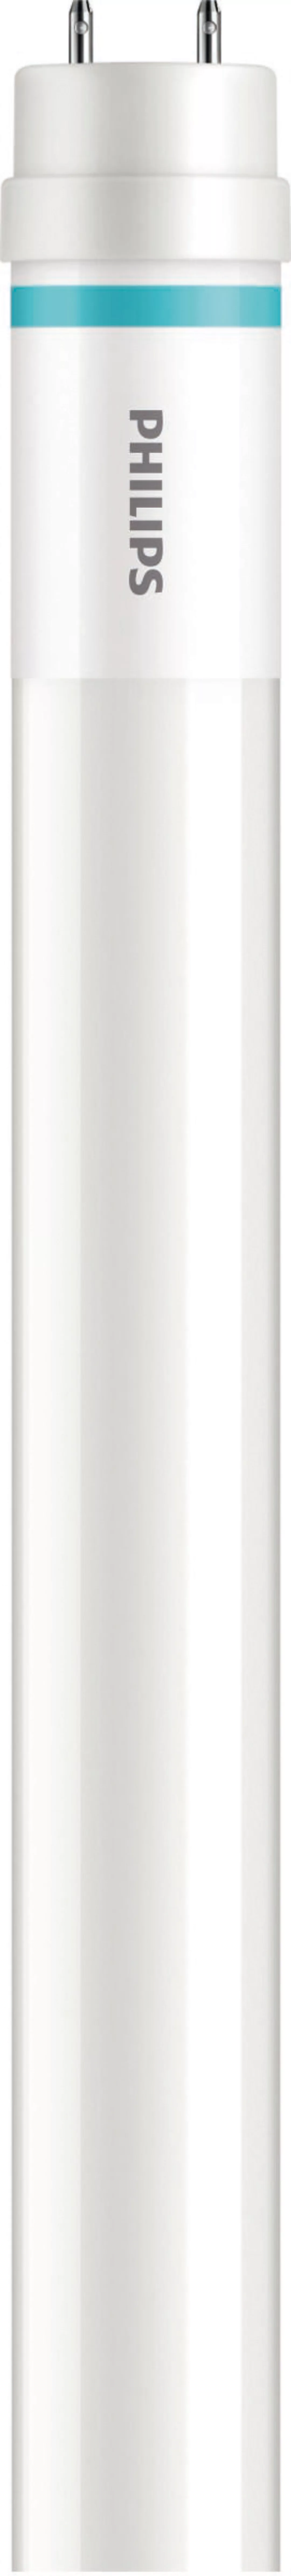 Philips Lighting LED-Tube T8 f. KVG/VVG G13, 830, 1200mm MASLEDtube #316805 günstig online kaufen